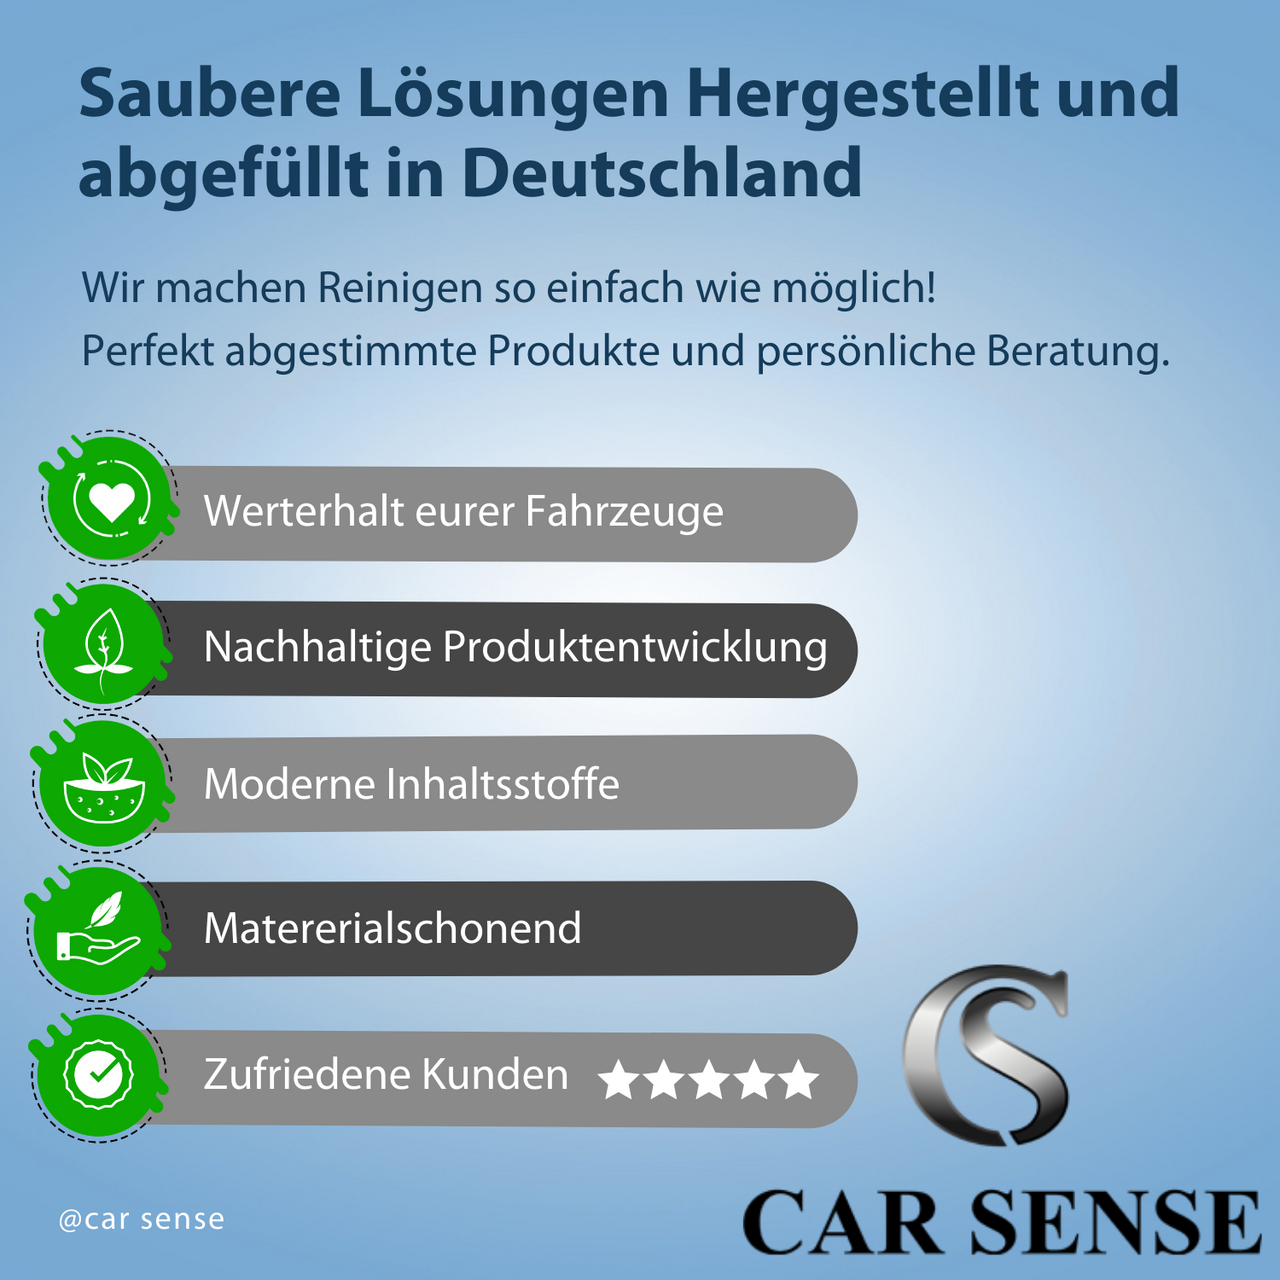 Car Sense Metal Polish ist eine Hochglanz-Veredelungs Politur auf Aluminiumoxidbasis